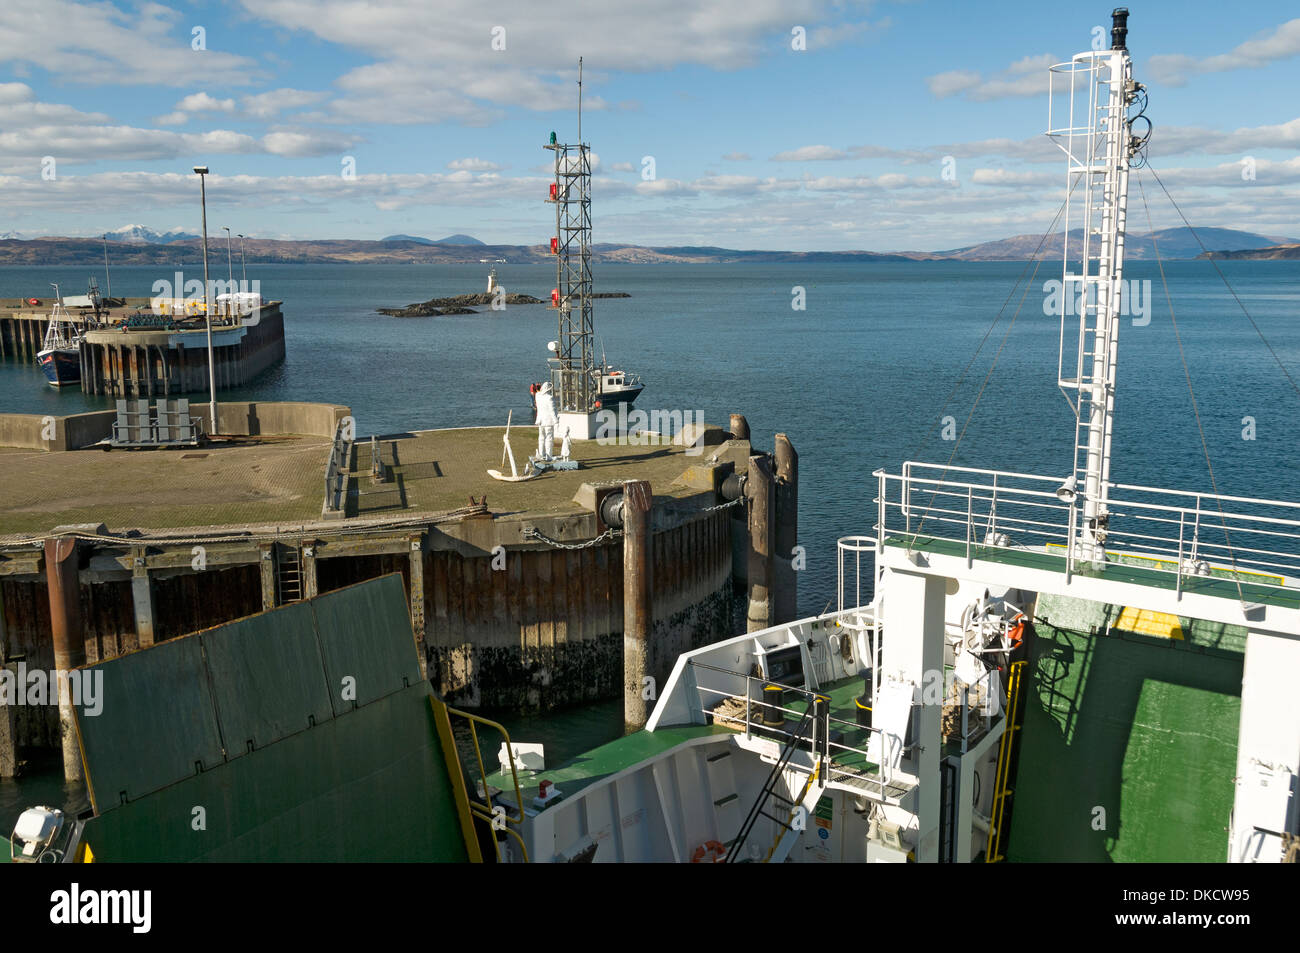 L'entrée du port de l'Armadale Mallaig (Skye) ferry, région des Highlands, Ecosse, Royaume-Uni. En regardant vers l'île de Skye. Banque D'Images